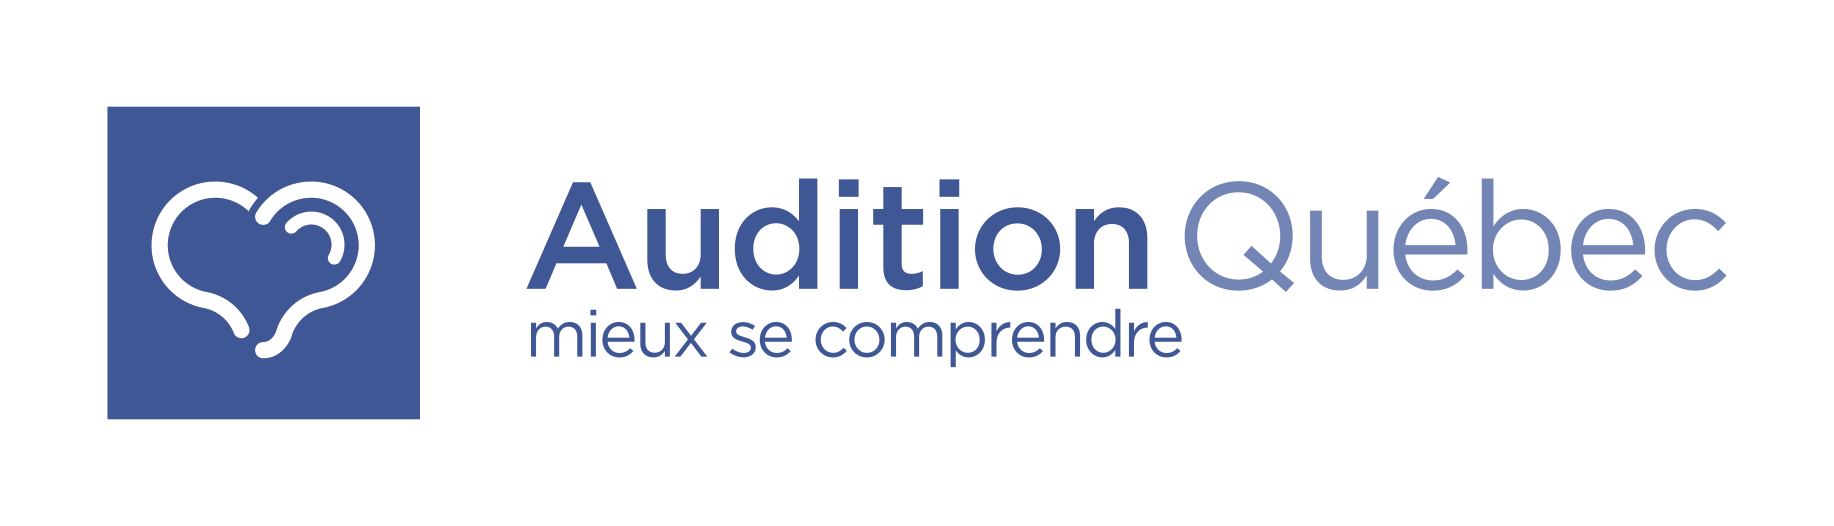 Audition Québec